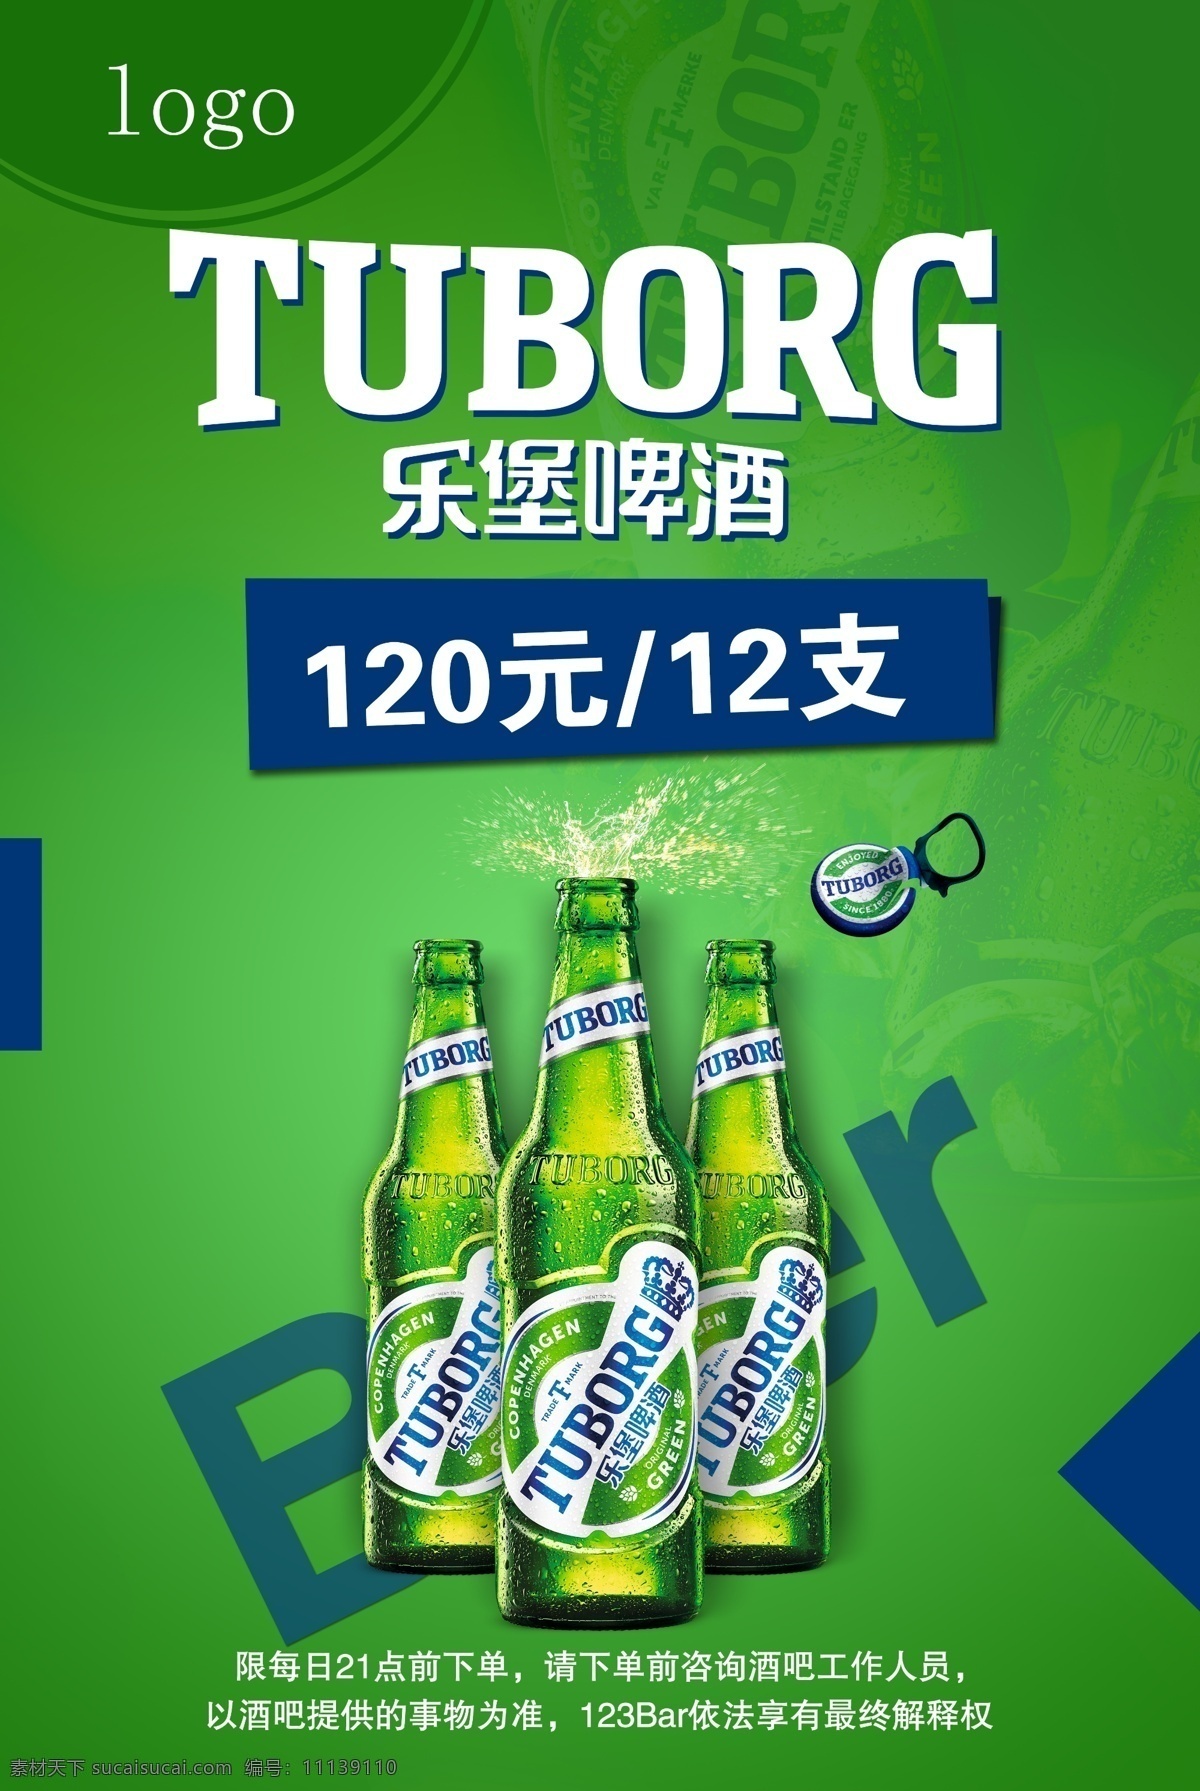 乐堡啤酒图片 乐堡啤酒 啤酒海报 绿色海报 啤酒宣传 乐堡